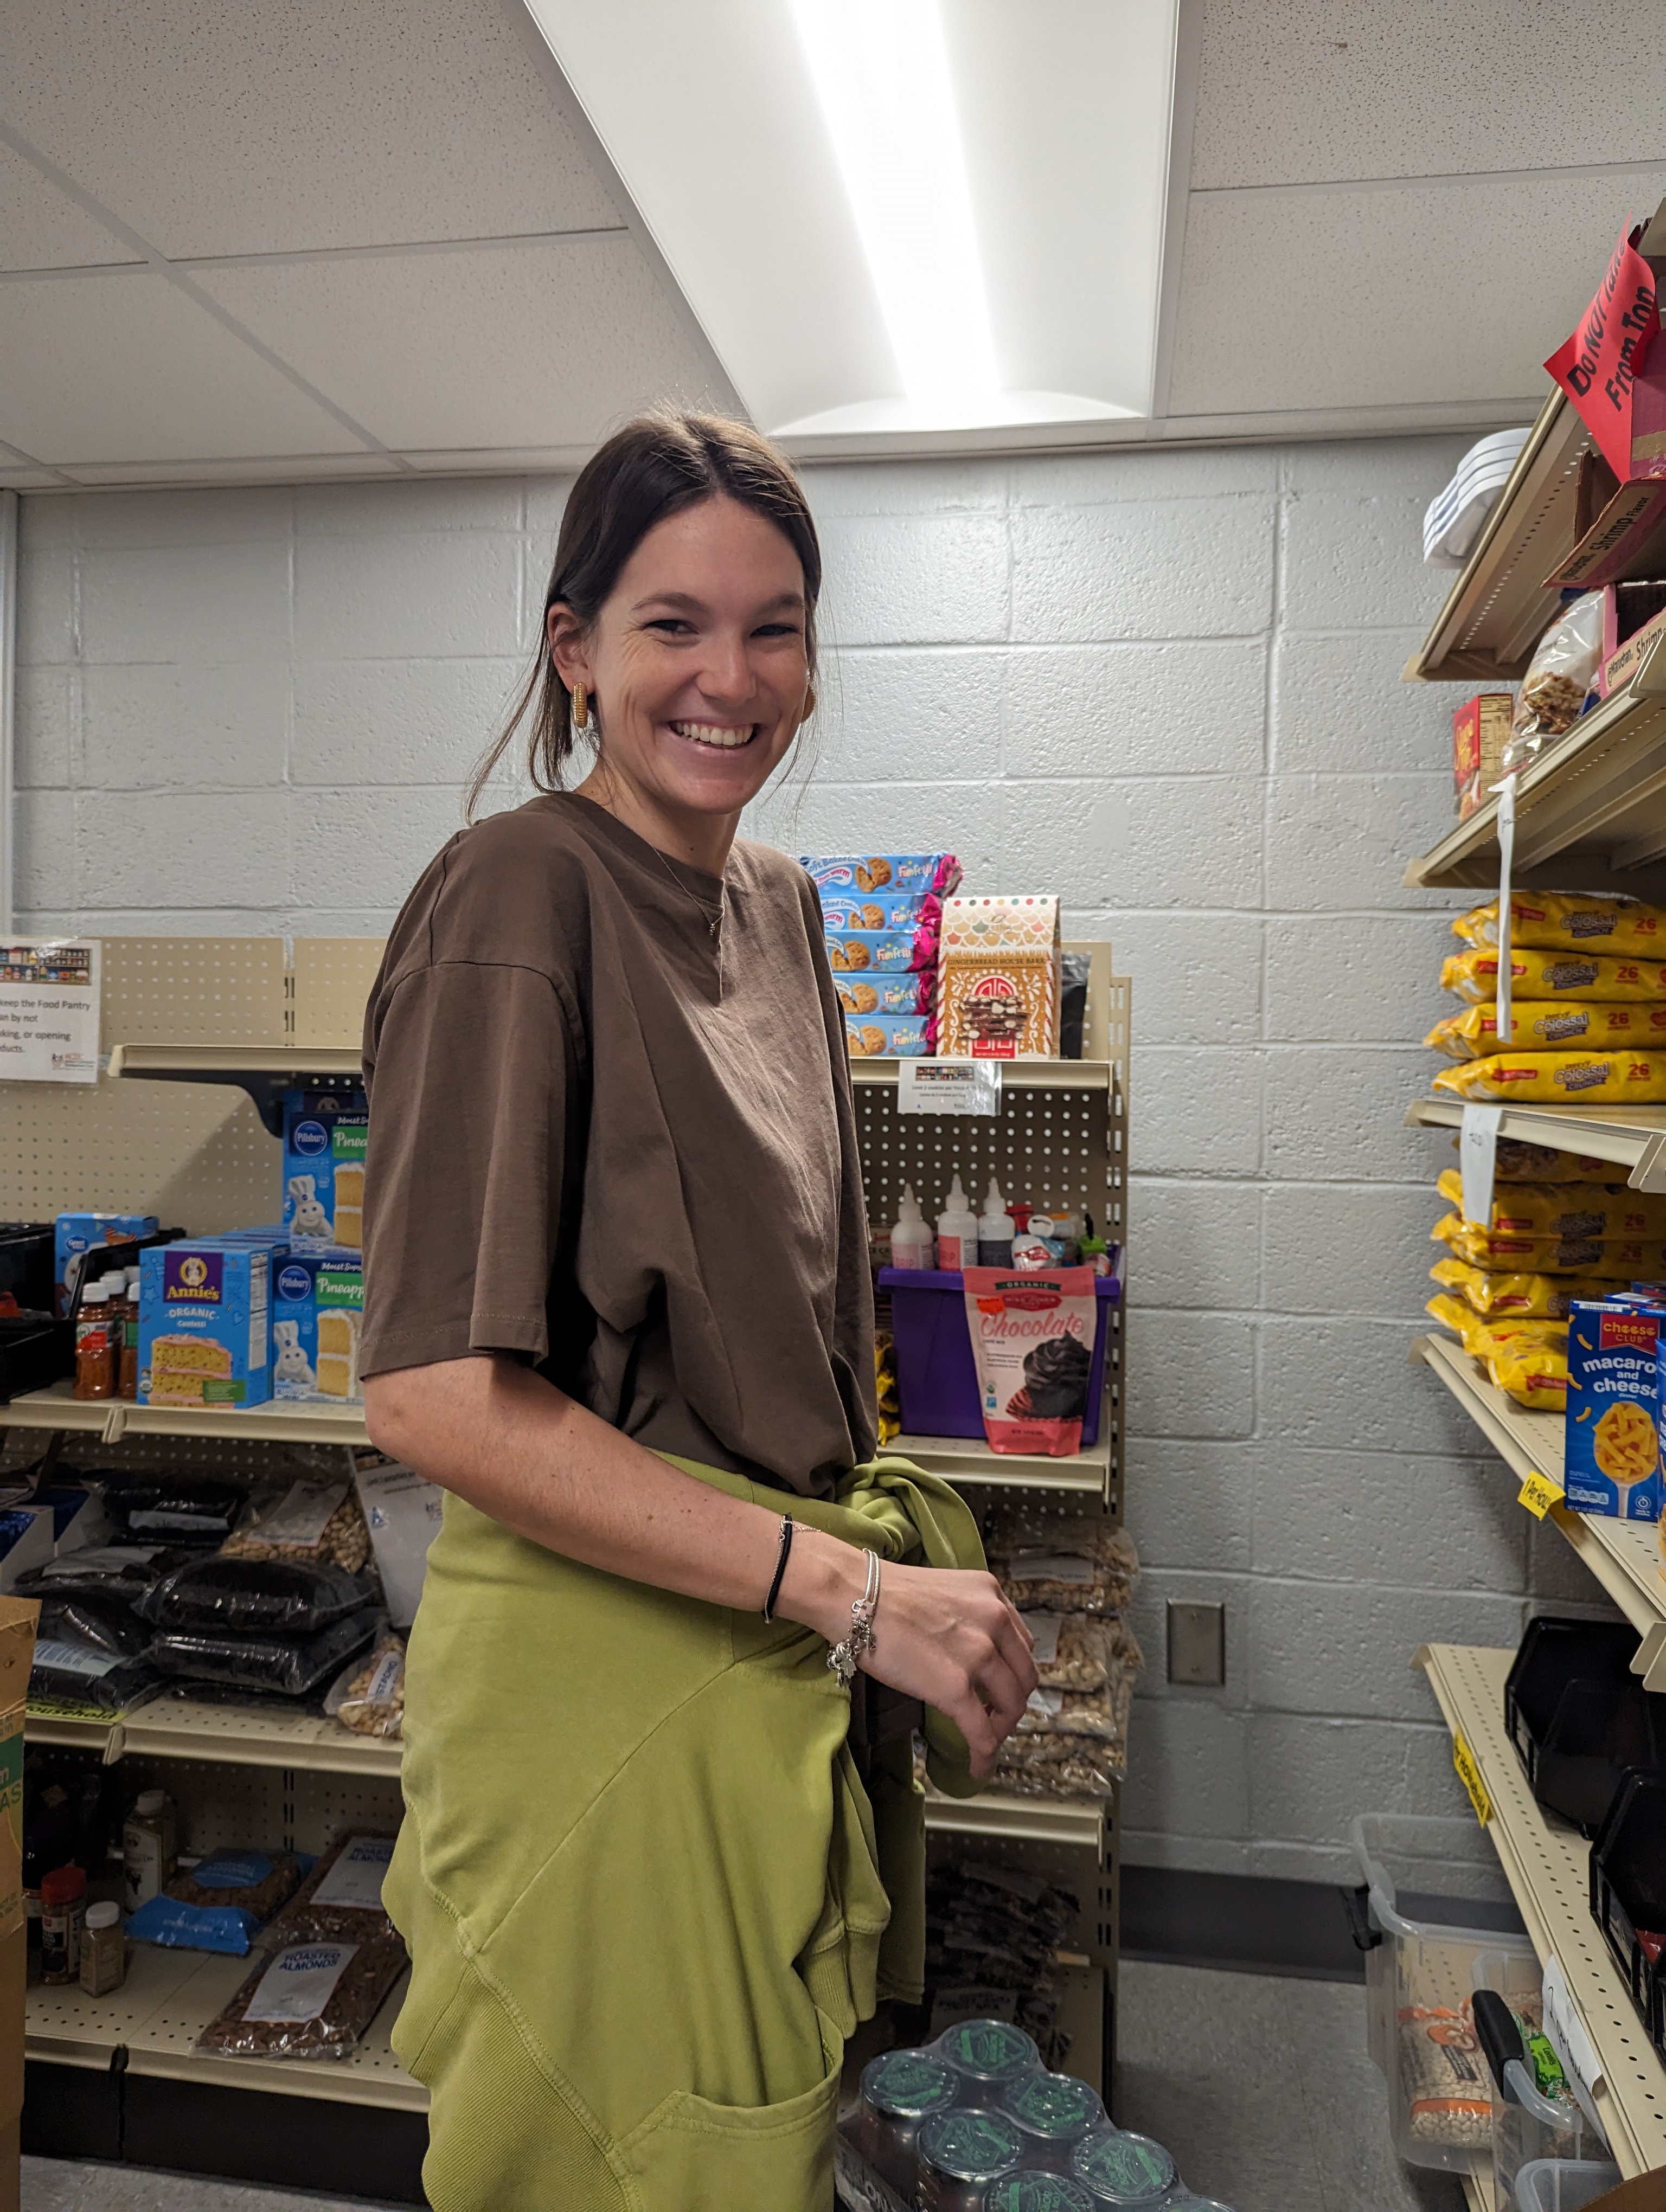 food pantry volunteers placing items on shelves